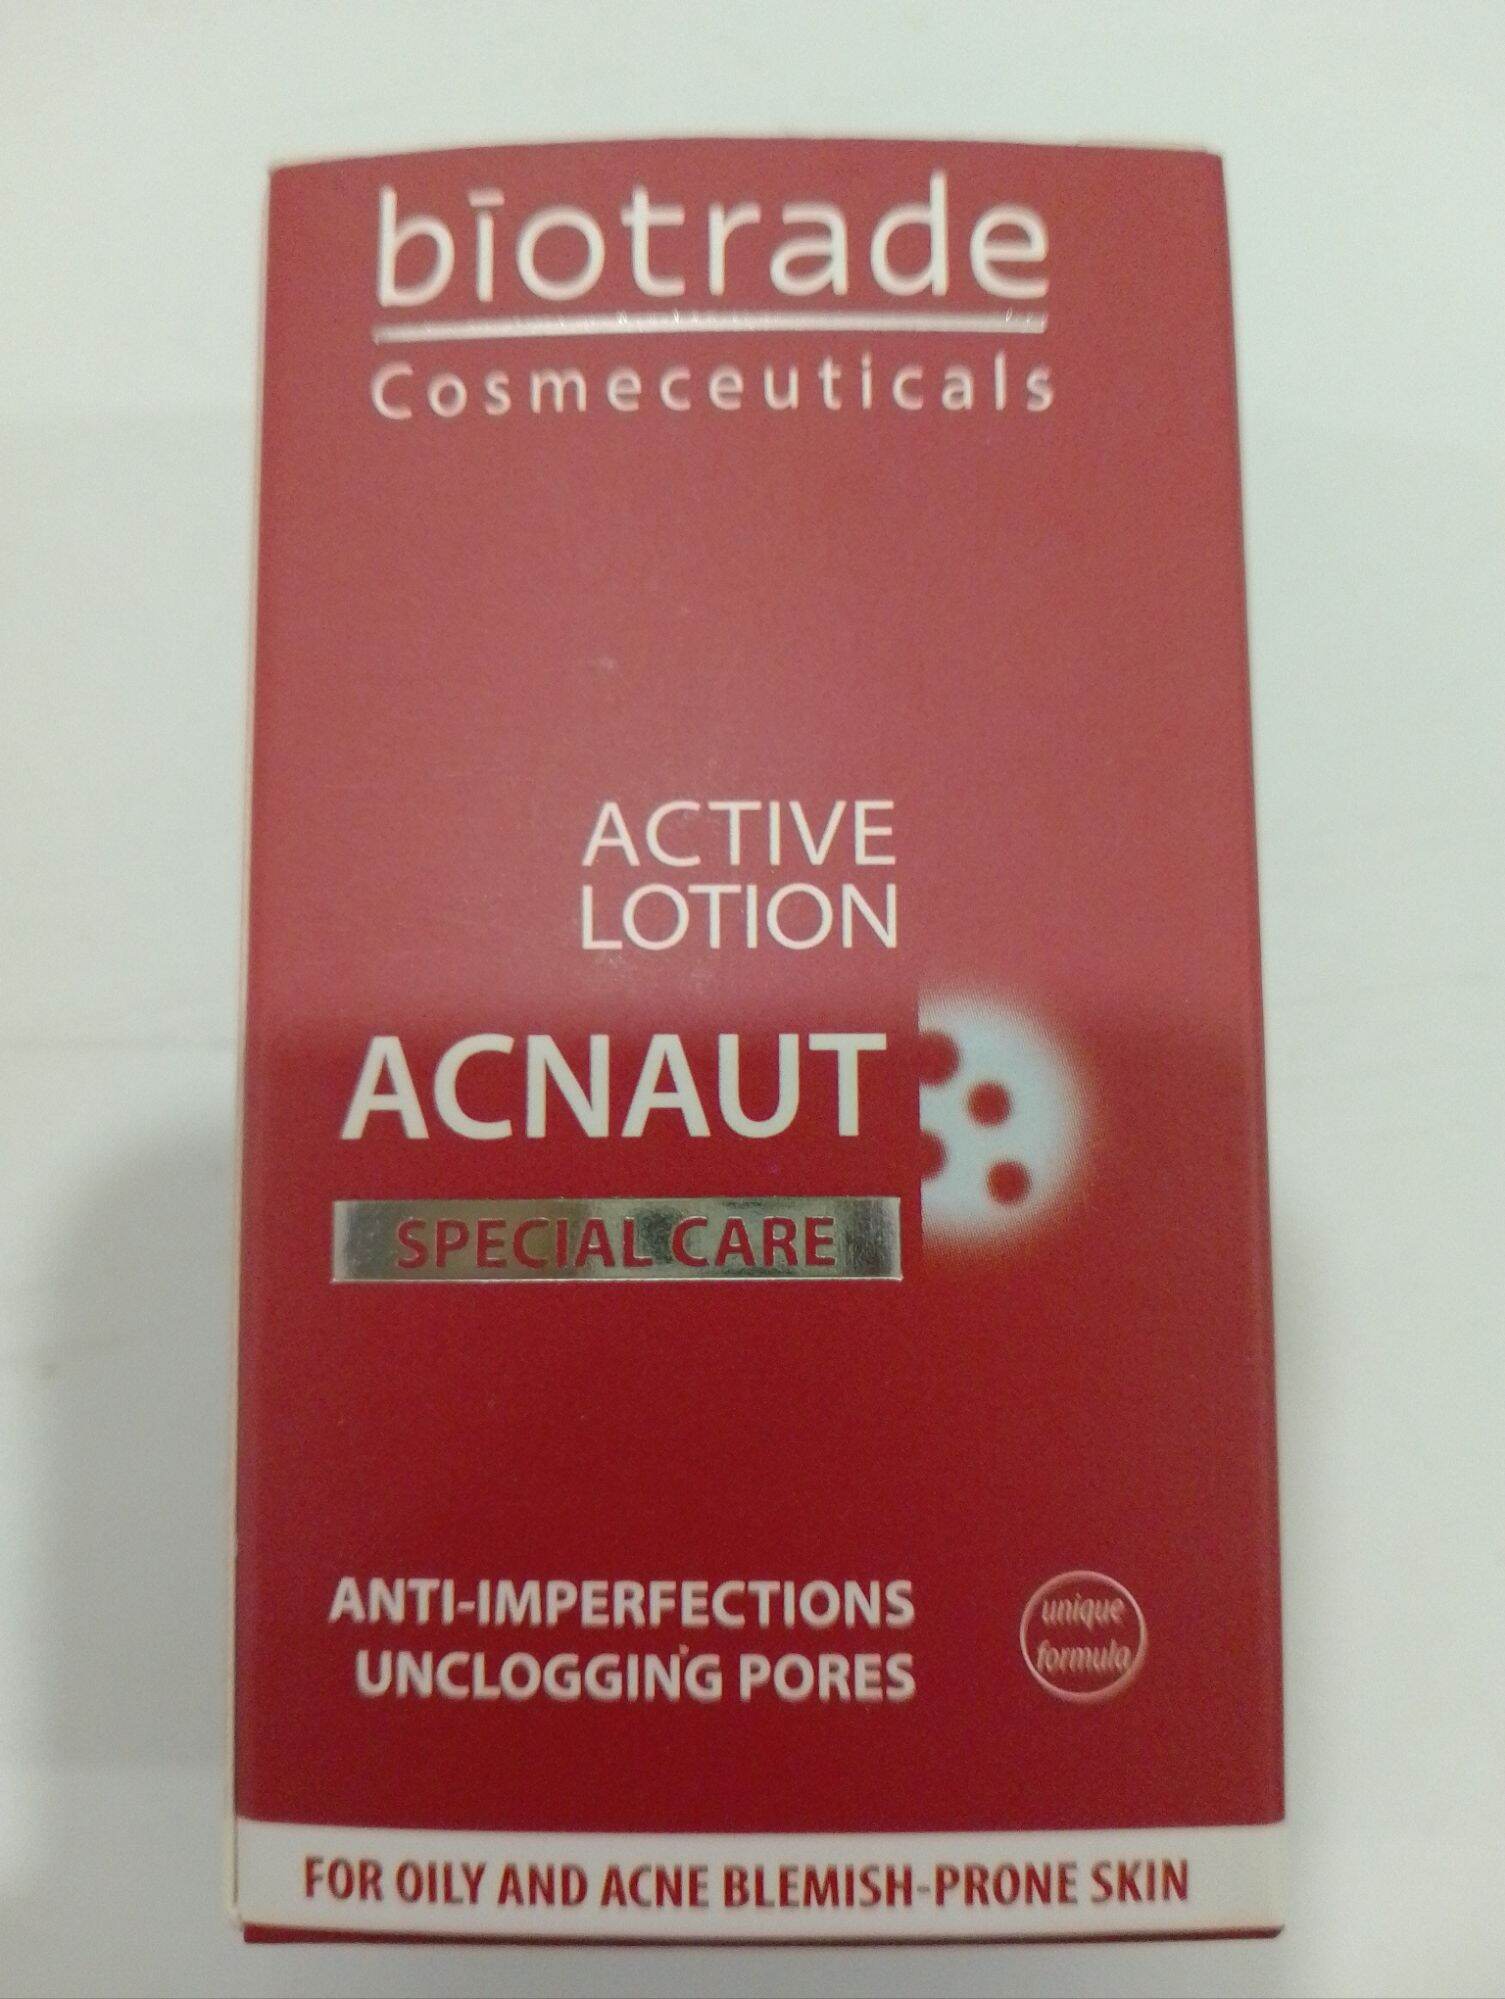 Chấm Mụn Biotrade Acnaut Lotion Giảm Nhanh Các Loại Mụn 10ml - Dược Mỹ Phẩm Derma Touch